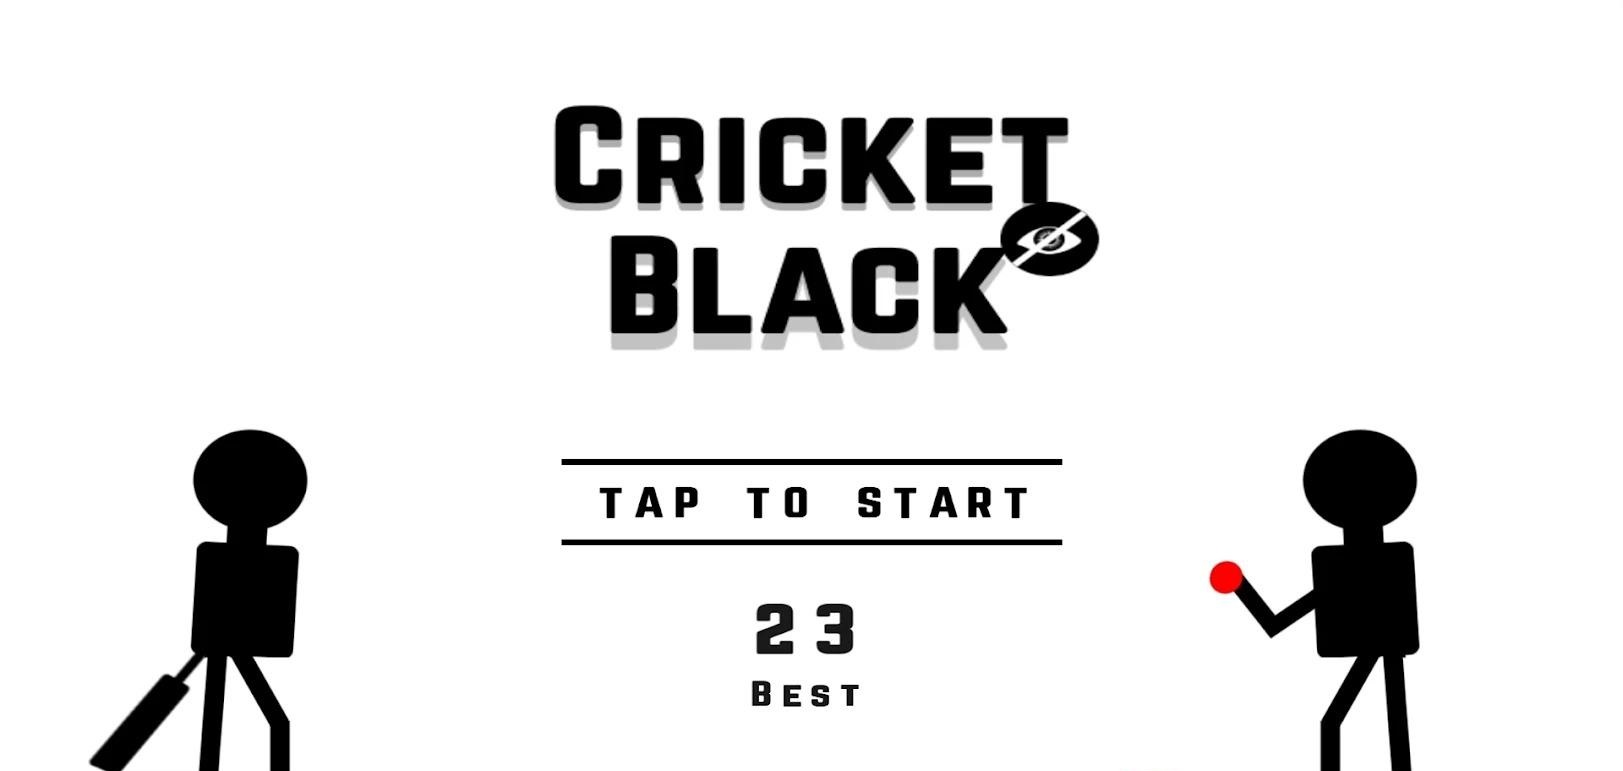 Blind Cricket Black游戏中文版截图4: